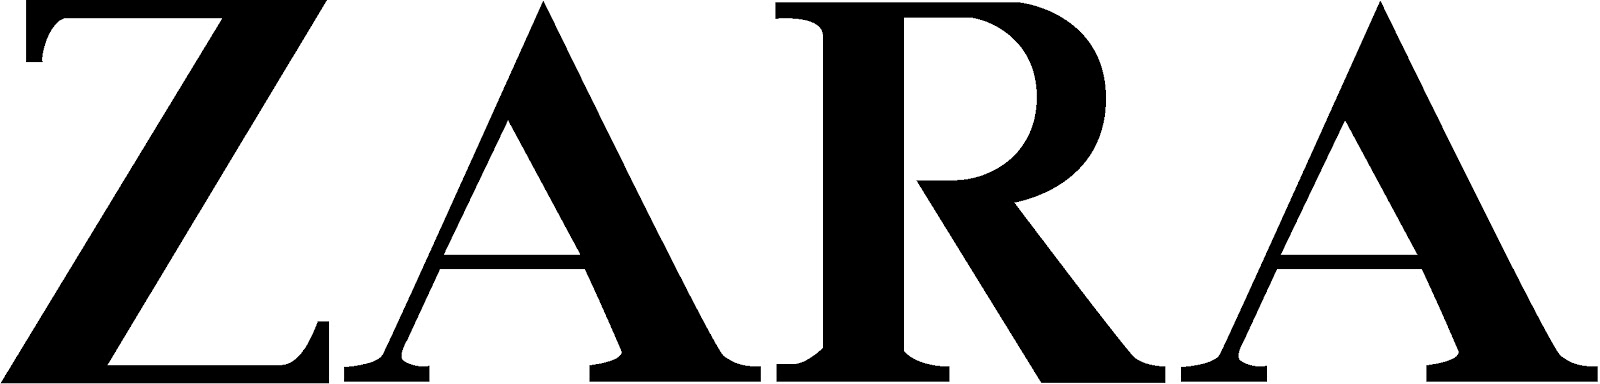 History of All Logos: All Zara Logos